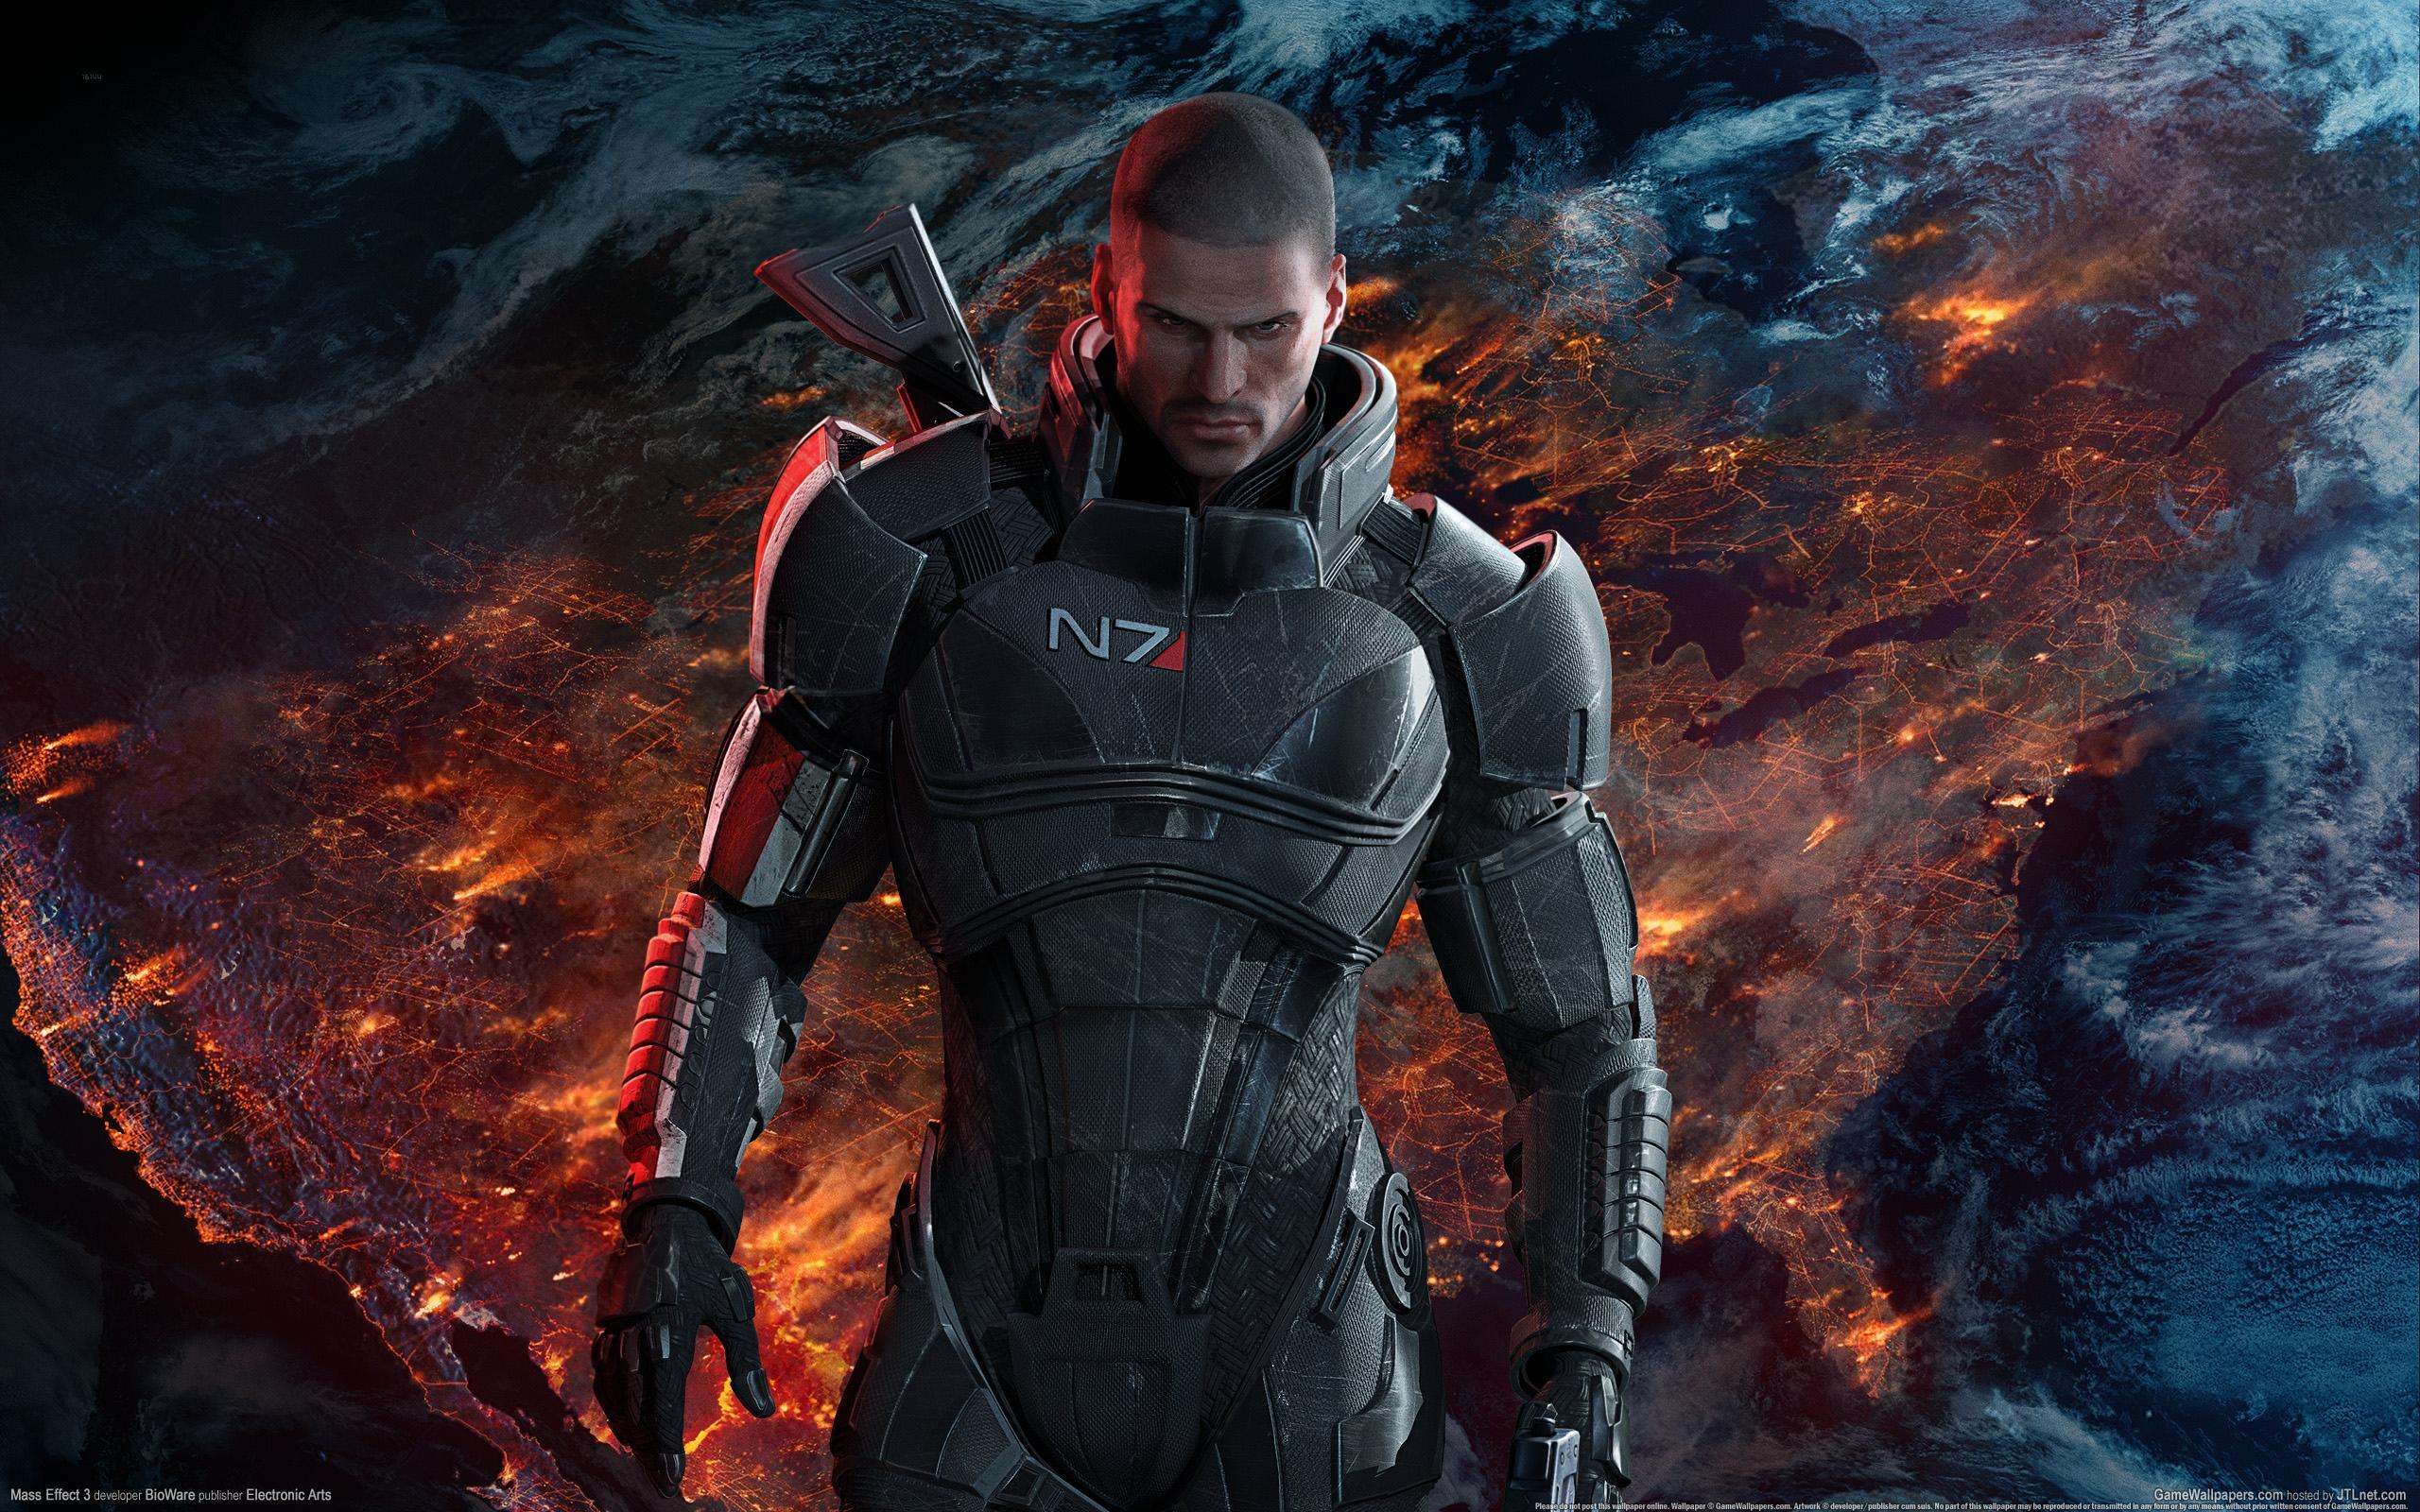 Mass Effect 3 HD Wallpaper